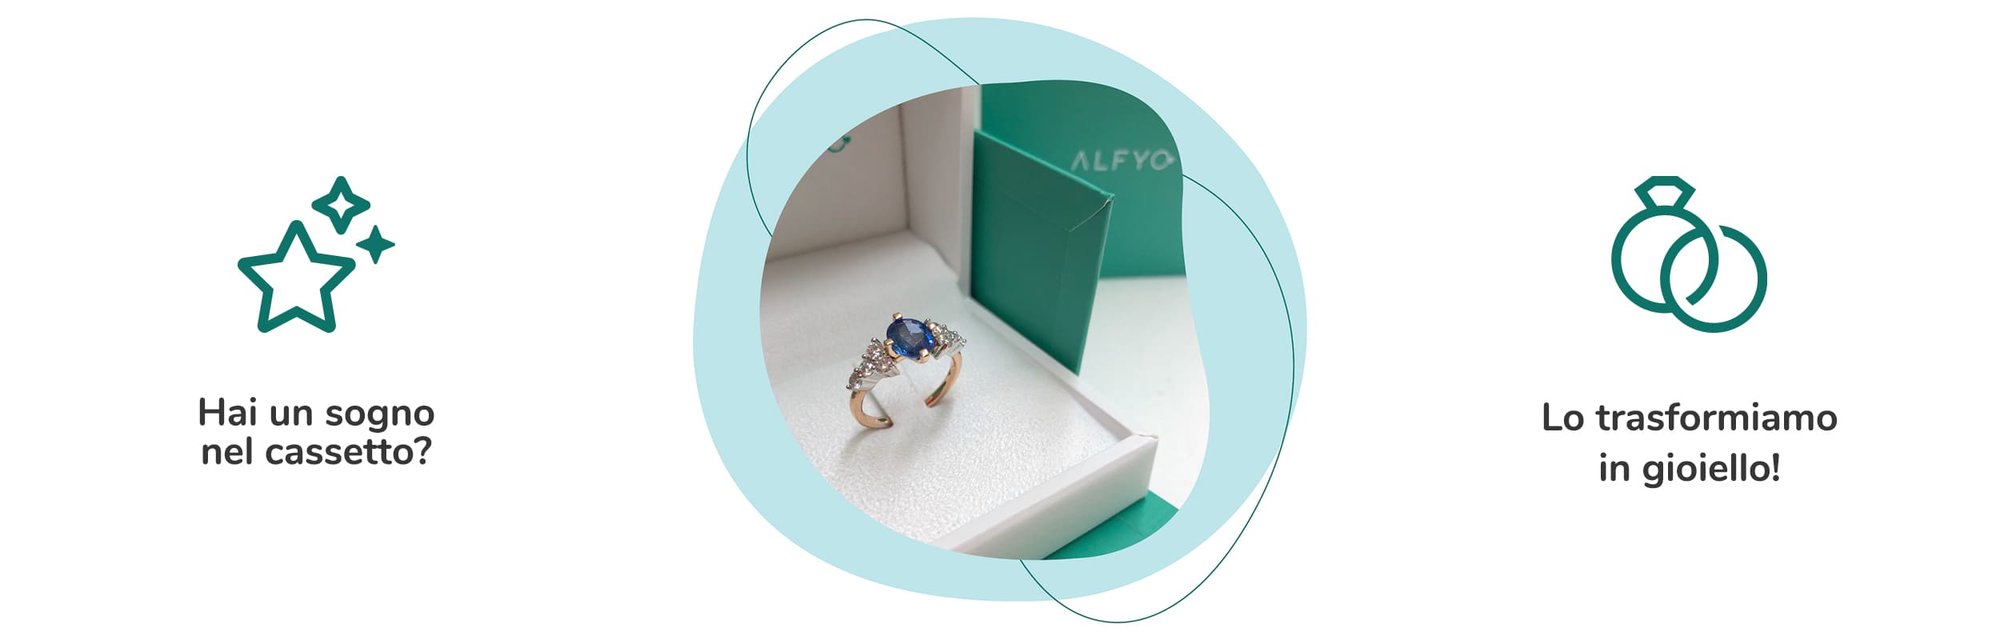 anello con zaffiro personalizzato gioielleria alfyo